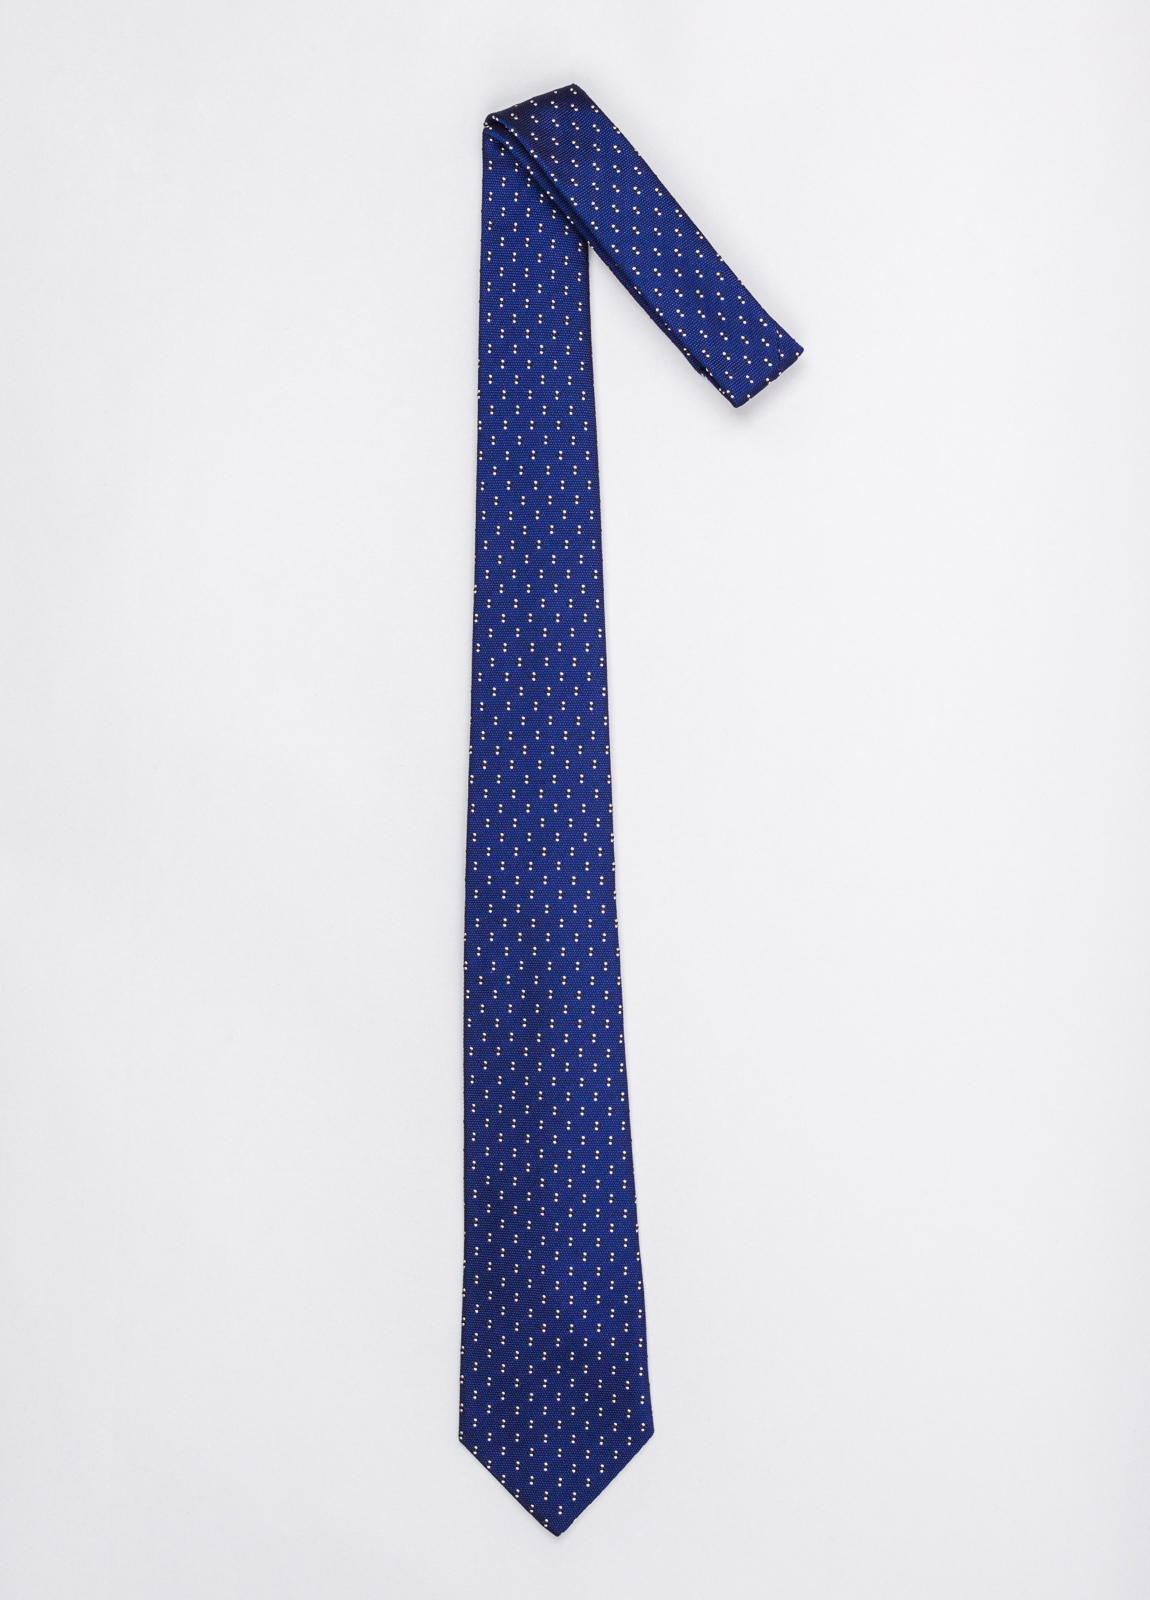 Corbata FUREST COLECCIÓN color azul con micro dibujo blanco - Ítem1